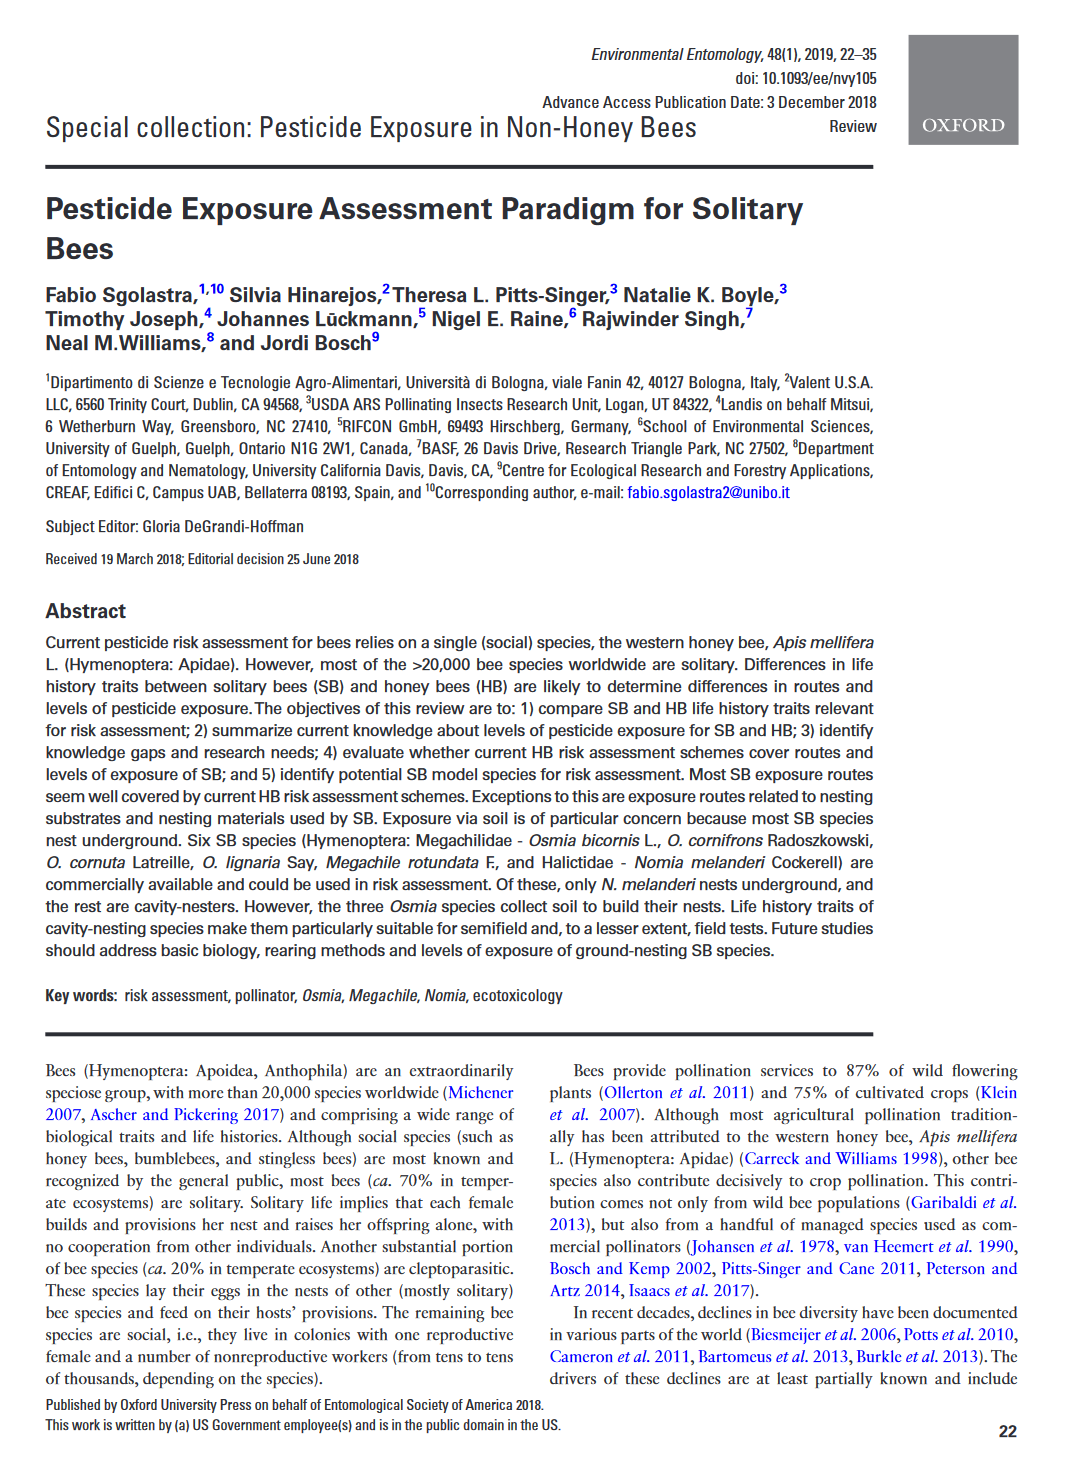 Pesticide-exposure-assessment-paradigm-solitary-bees